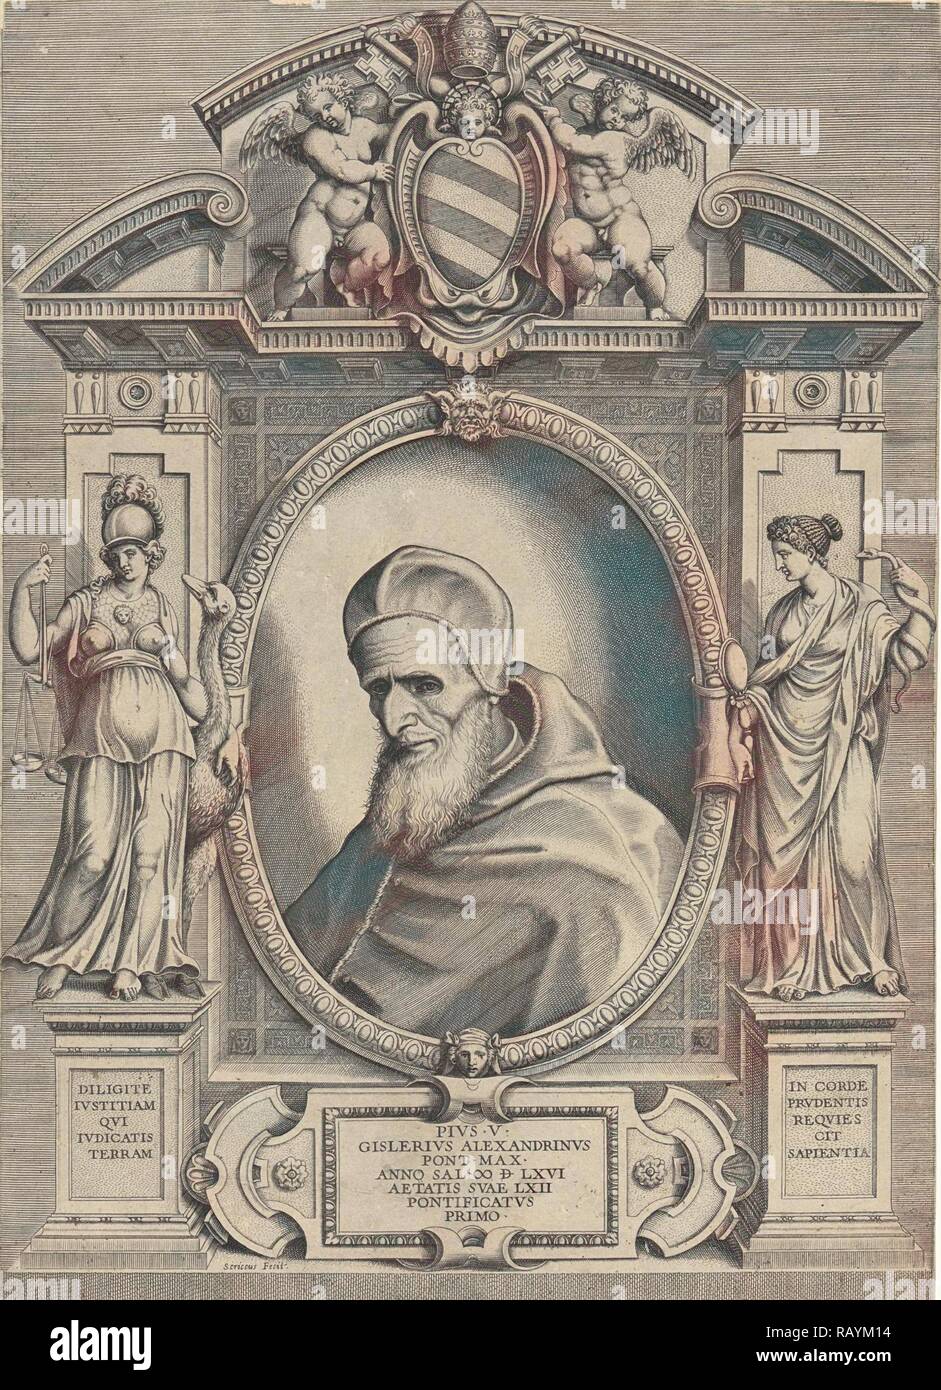 Ritratto di papa Pio V., Philippe de Soye, Antonio Lafreri, 1566. Reinventato da Gibon. Arte Classica con un moderno reinventato Foto Stock